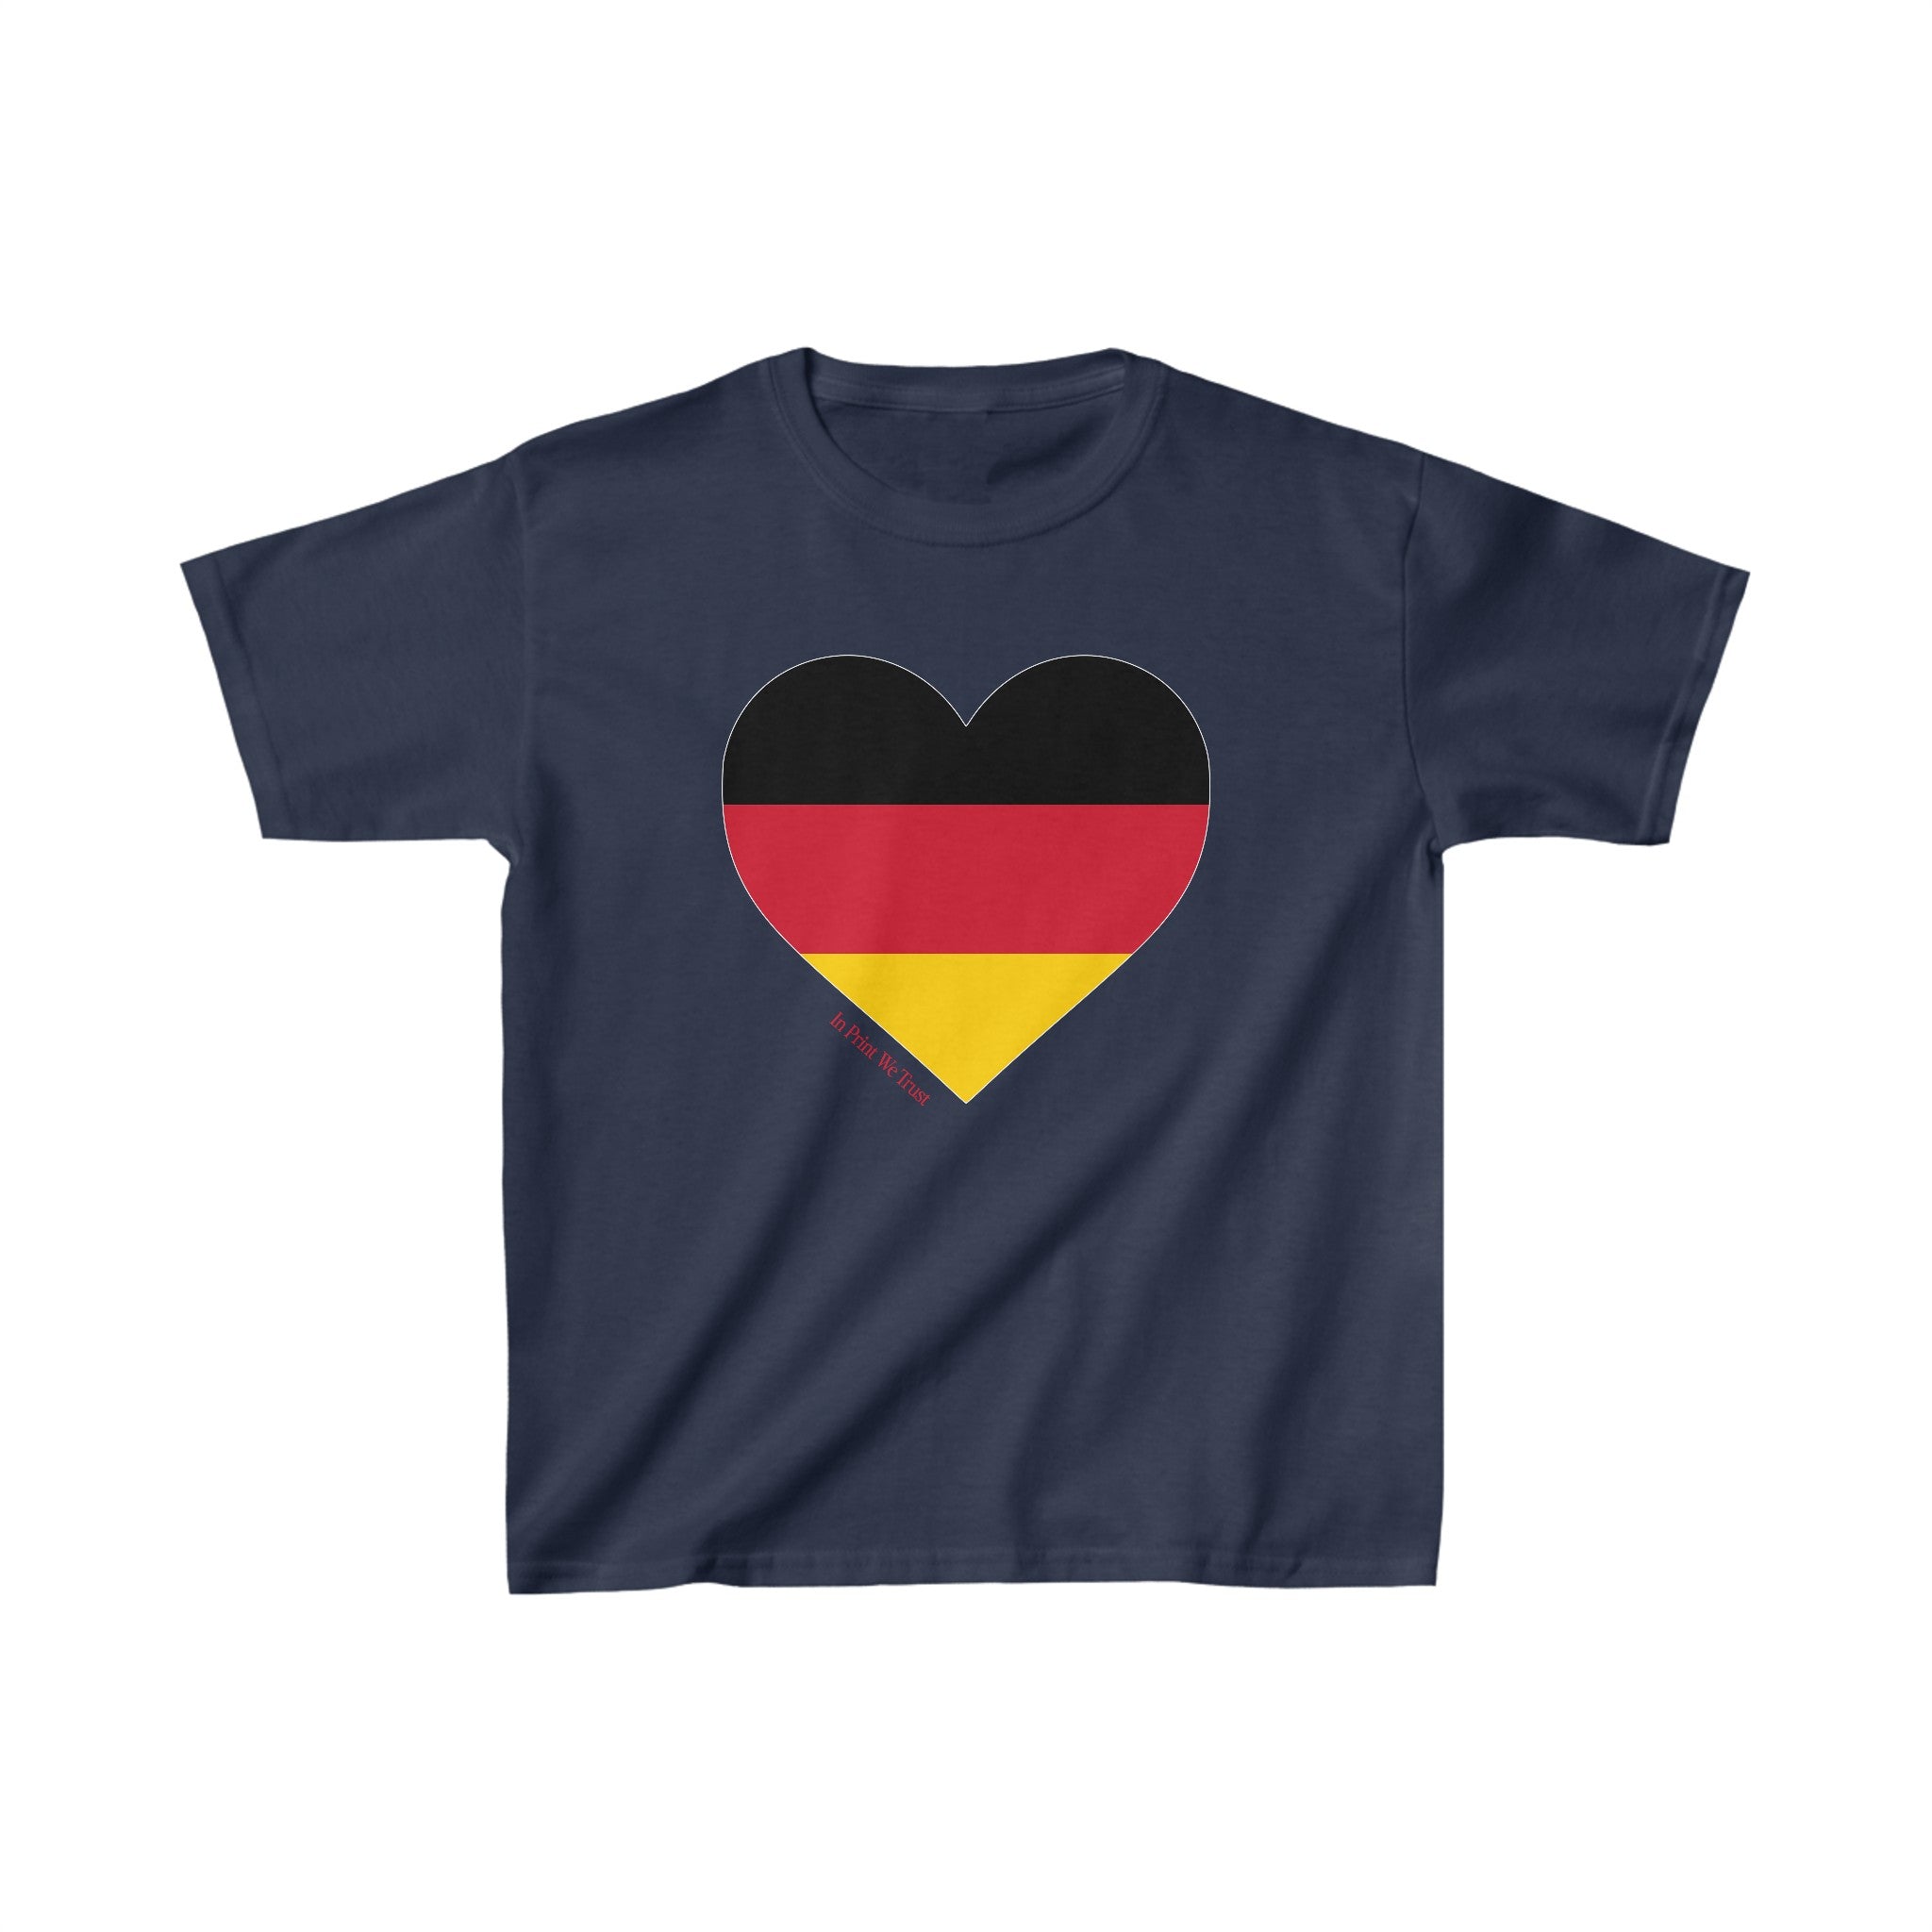 'Germany' baby tee - In Print We Trust